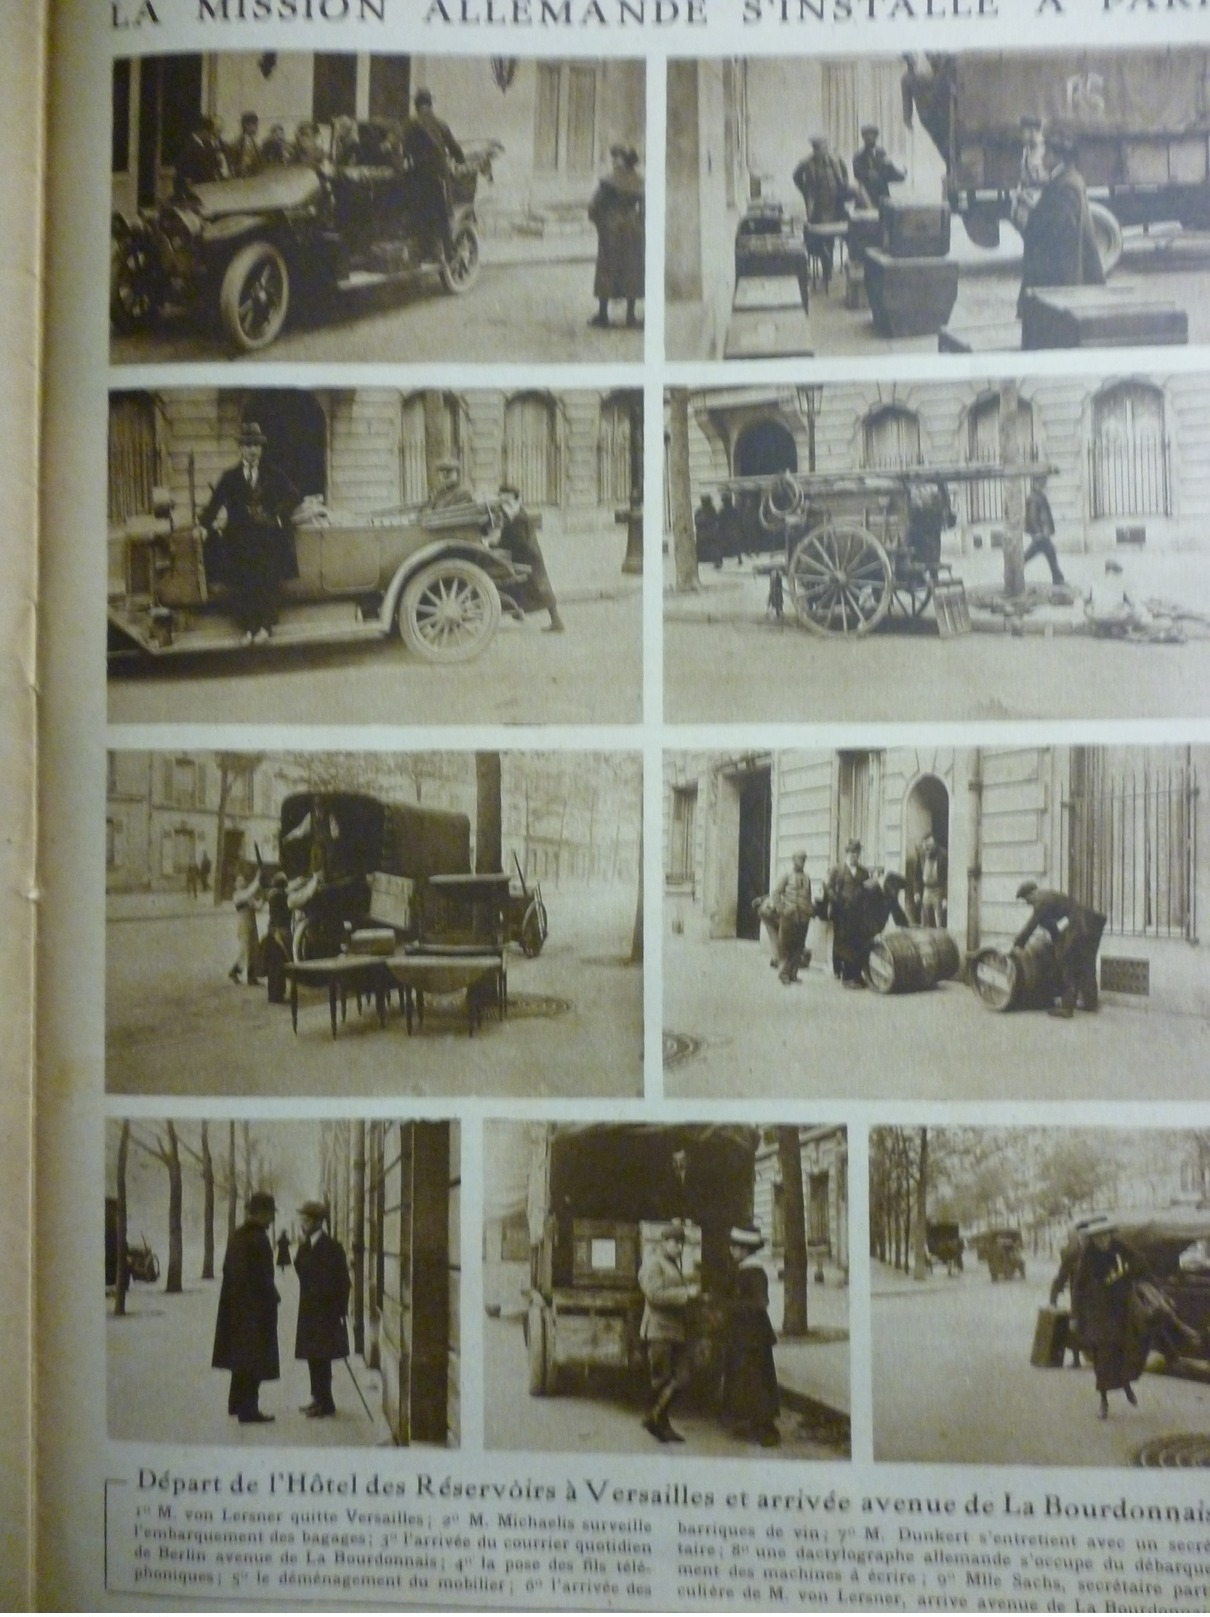 La Mission Allemande S'installe A Paris , De L'hotel Des Réservoirs A Versailles A L'avenue De La Bourdonnais 1919 - Historical Documents